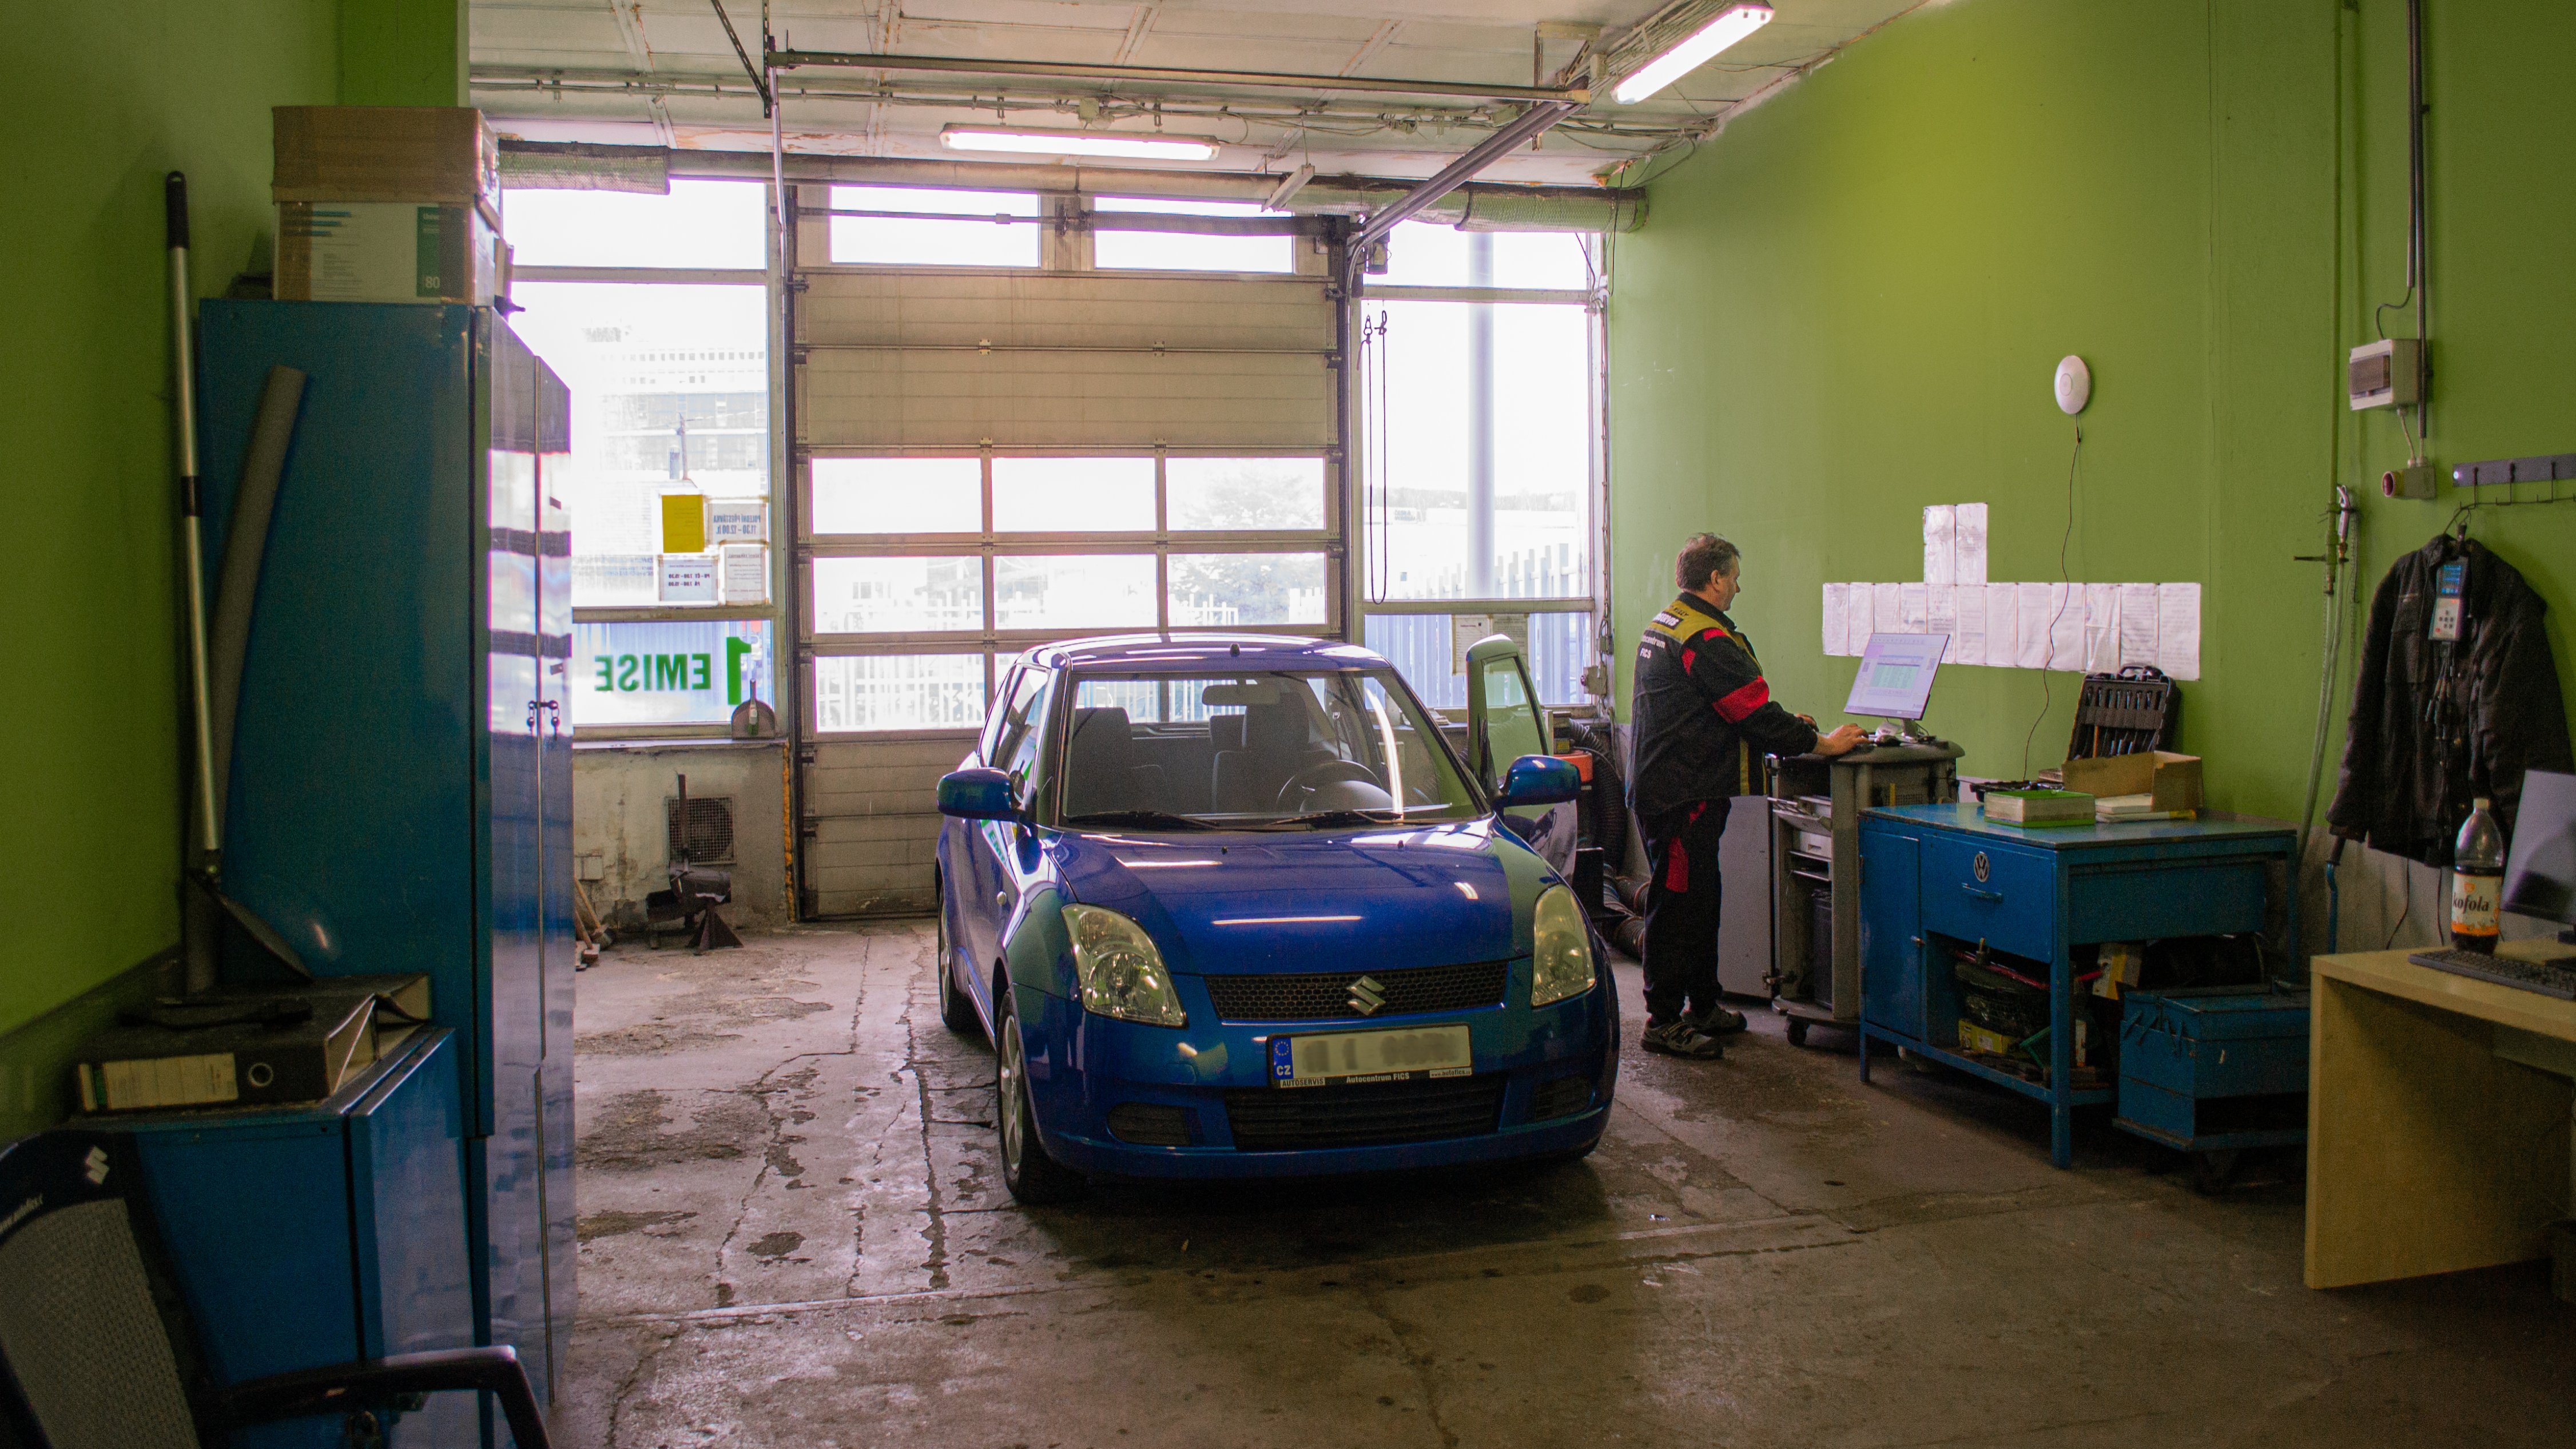 Vnitřní pohled na emisní box s modrým autem